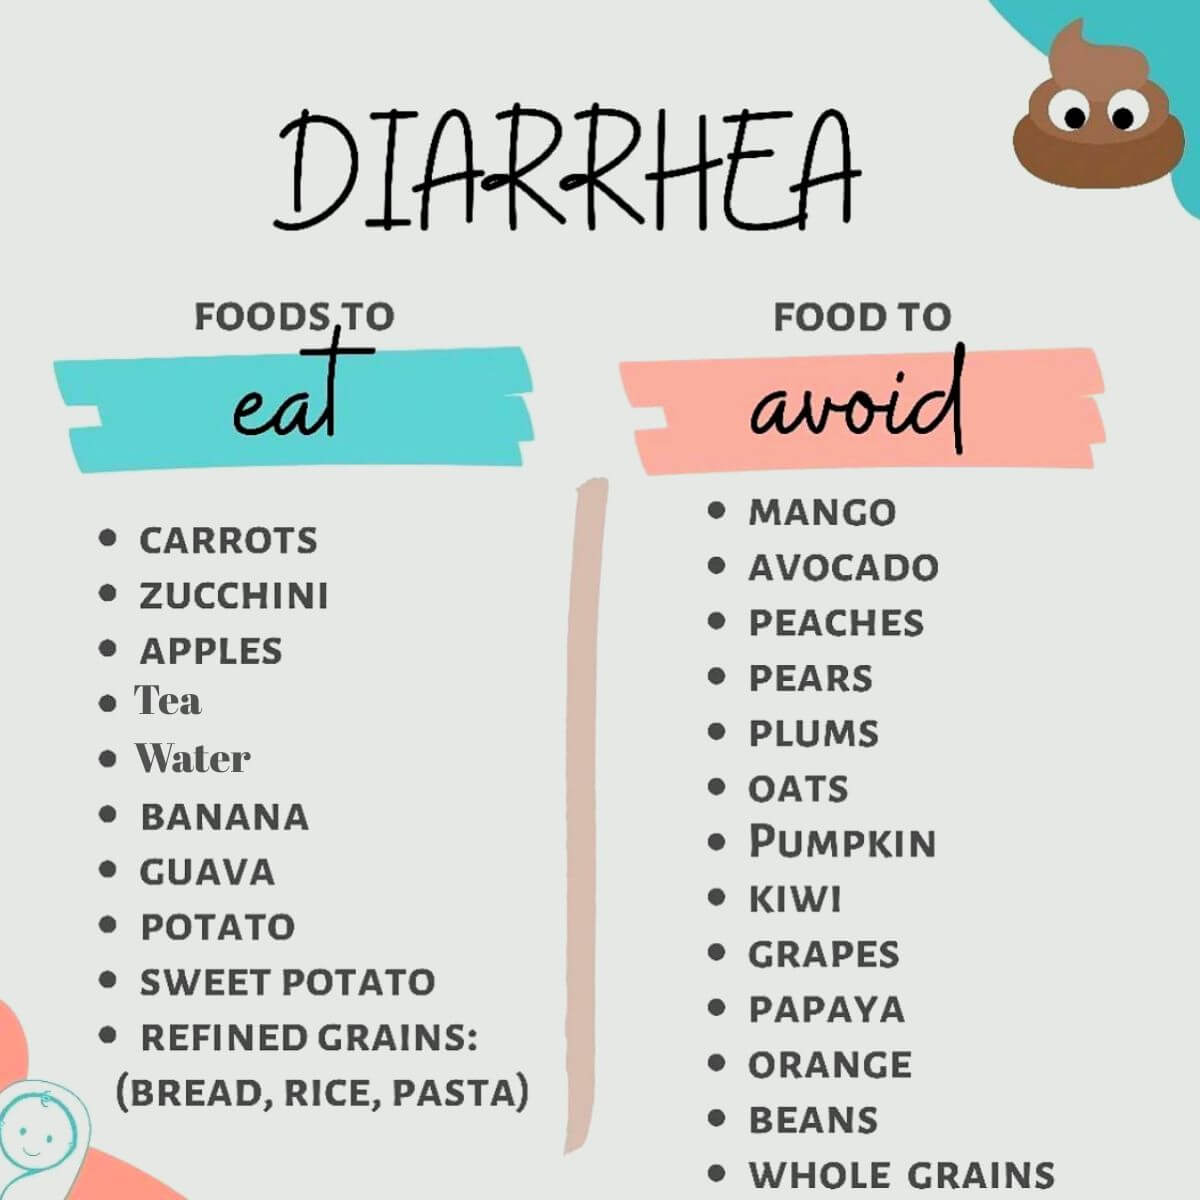 Vegan Diarrhea: What to Eat, What to Avoid